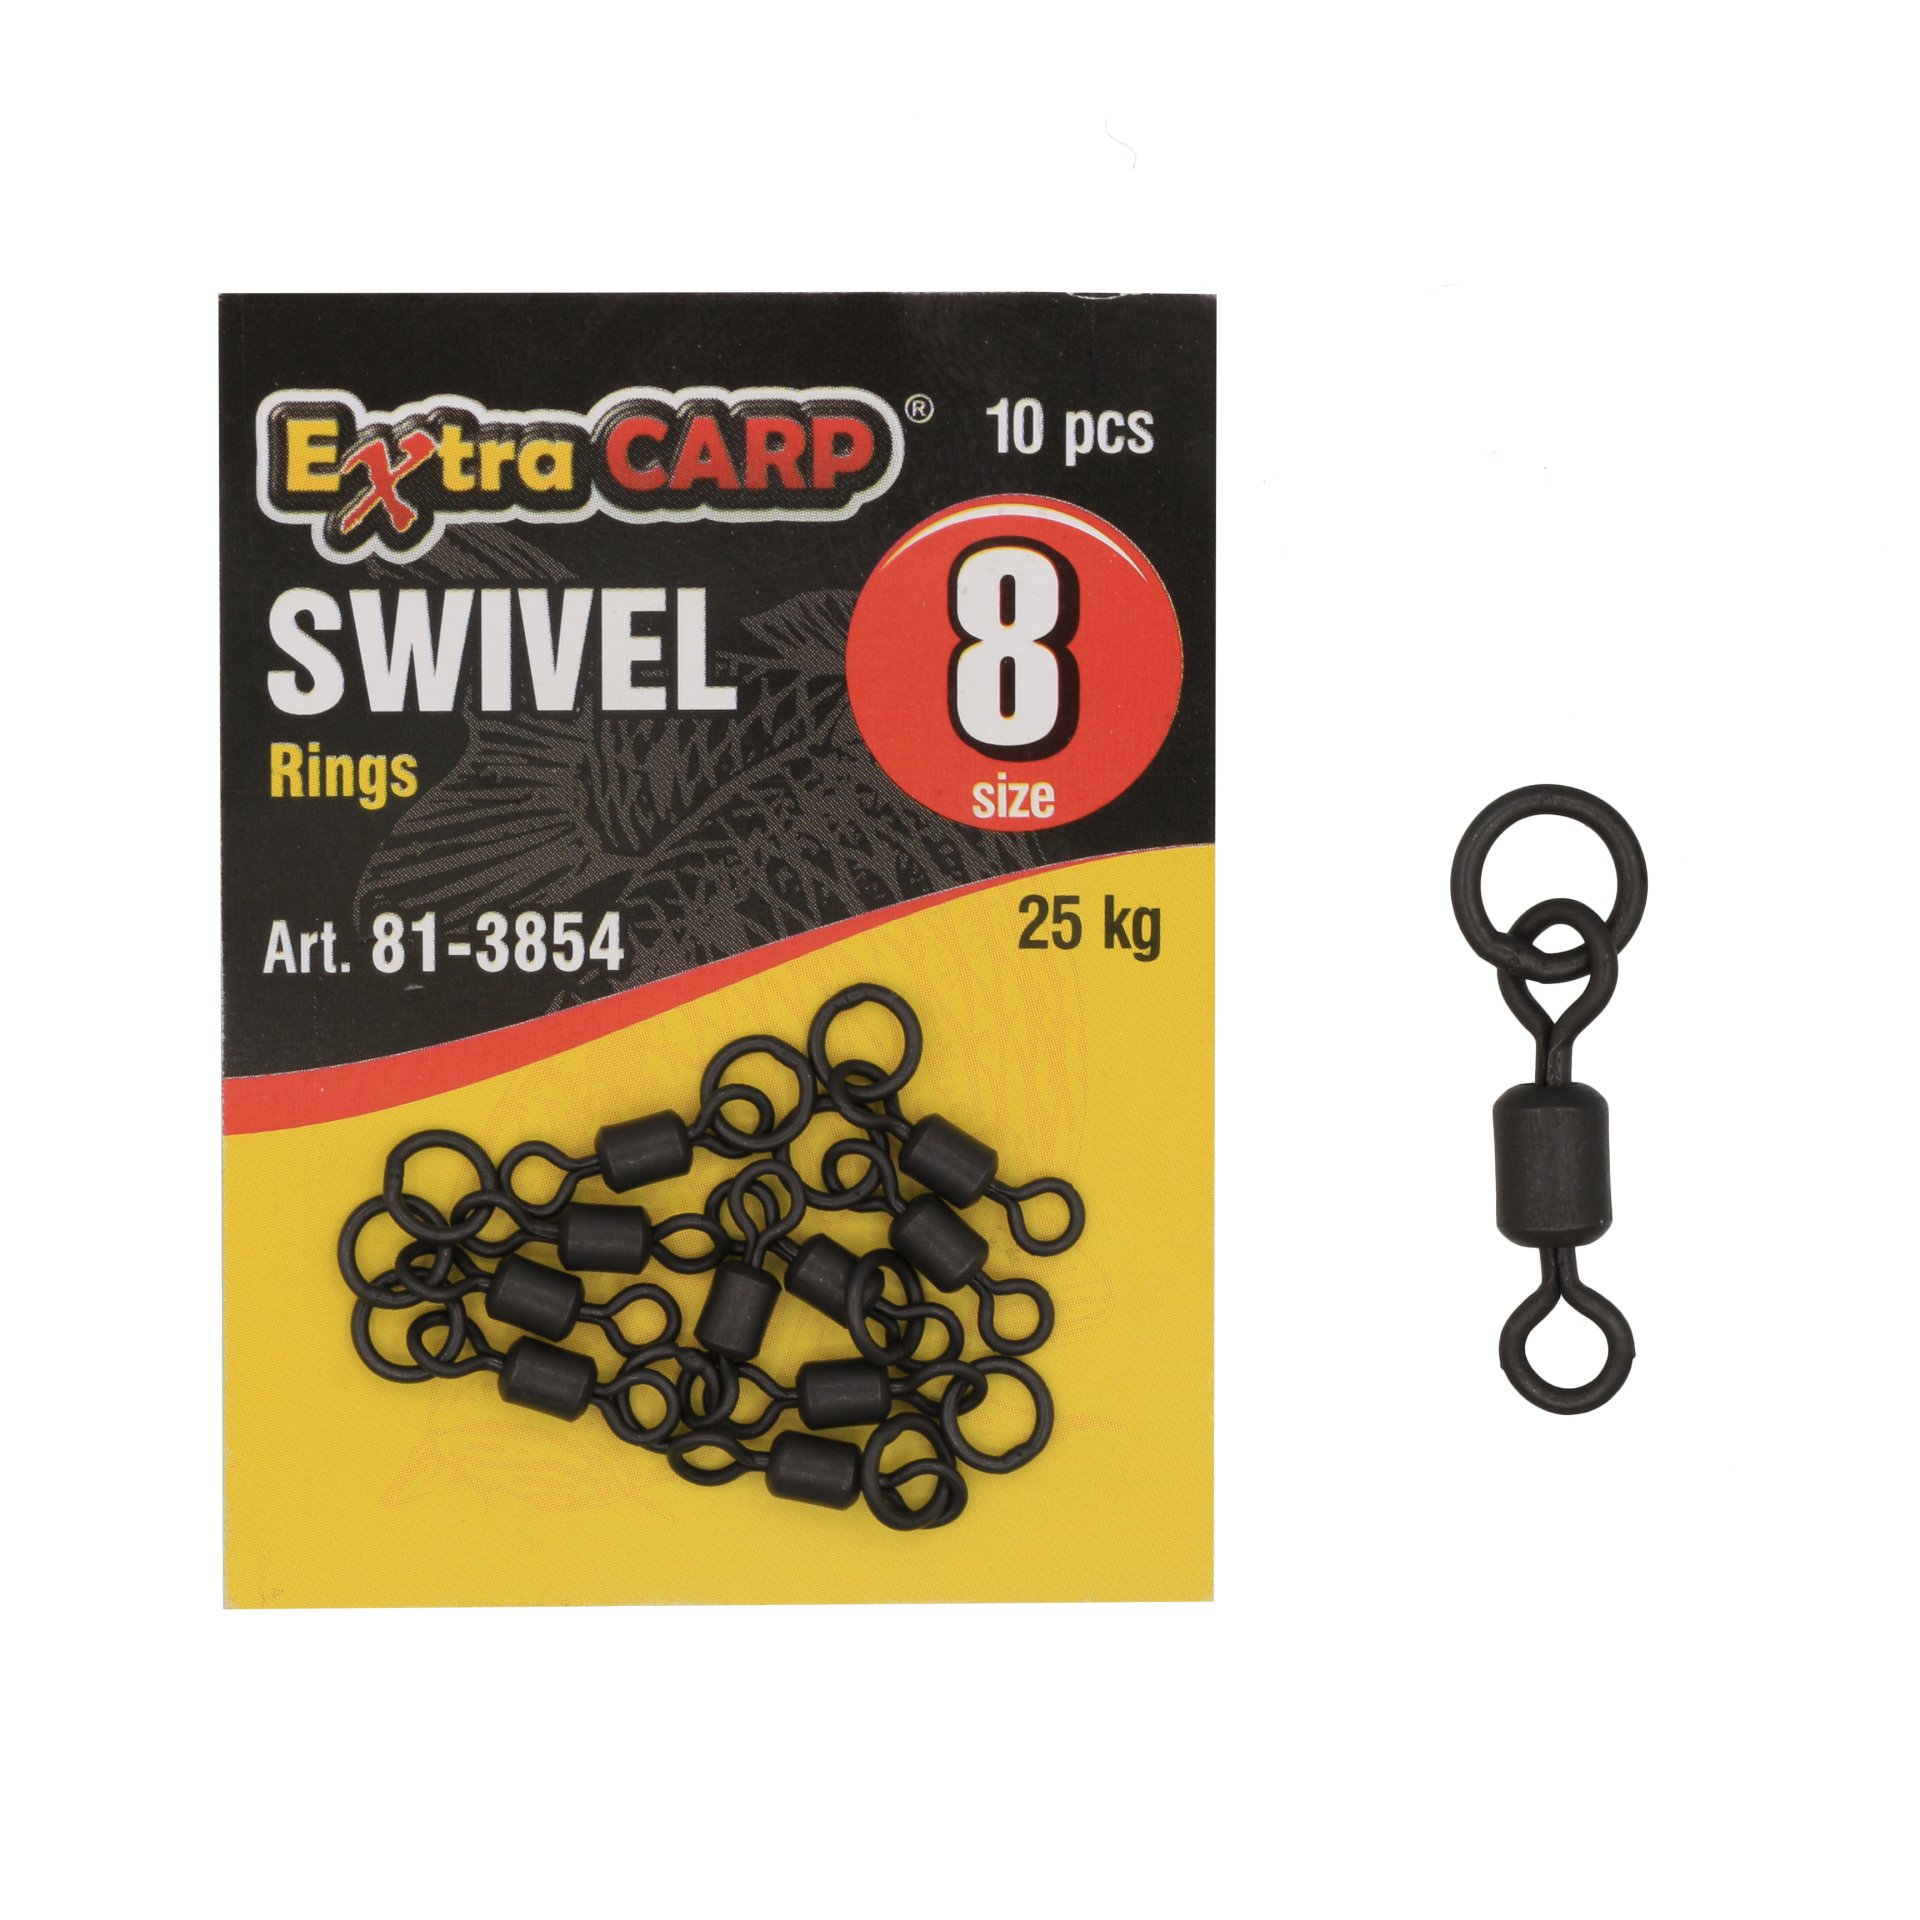 Swivel Rings Size 8/10 Pcs Hızlı Fırdöndü